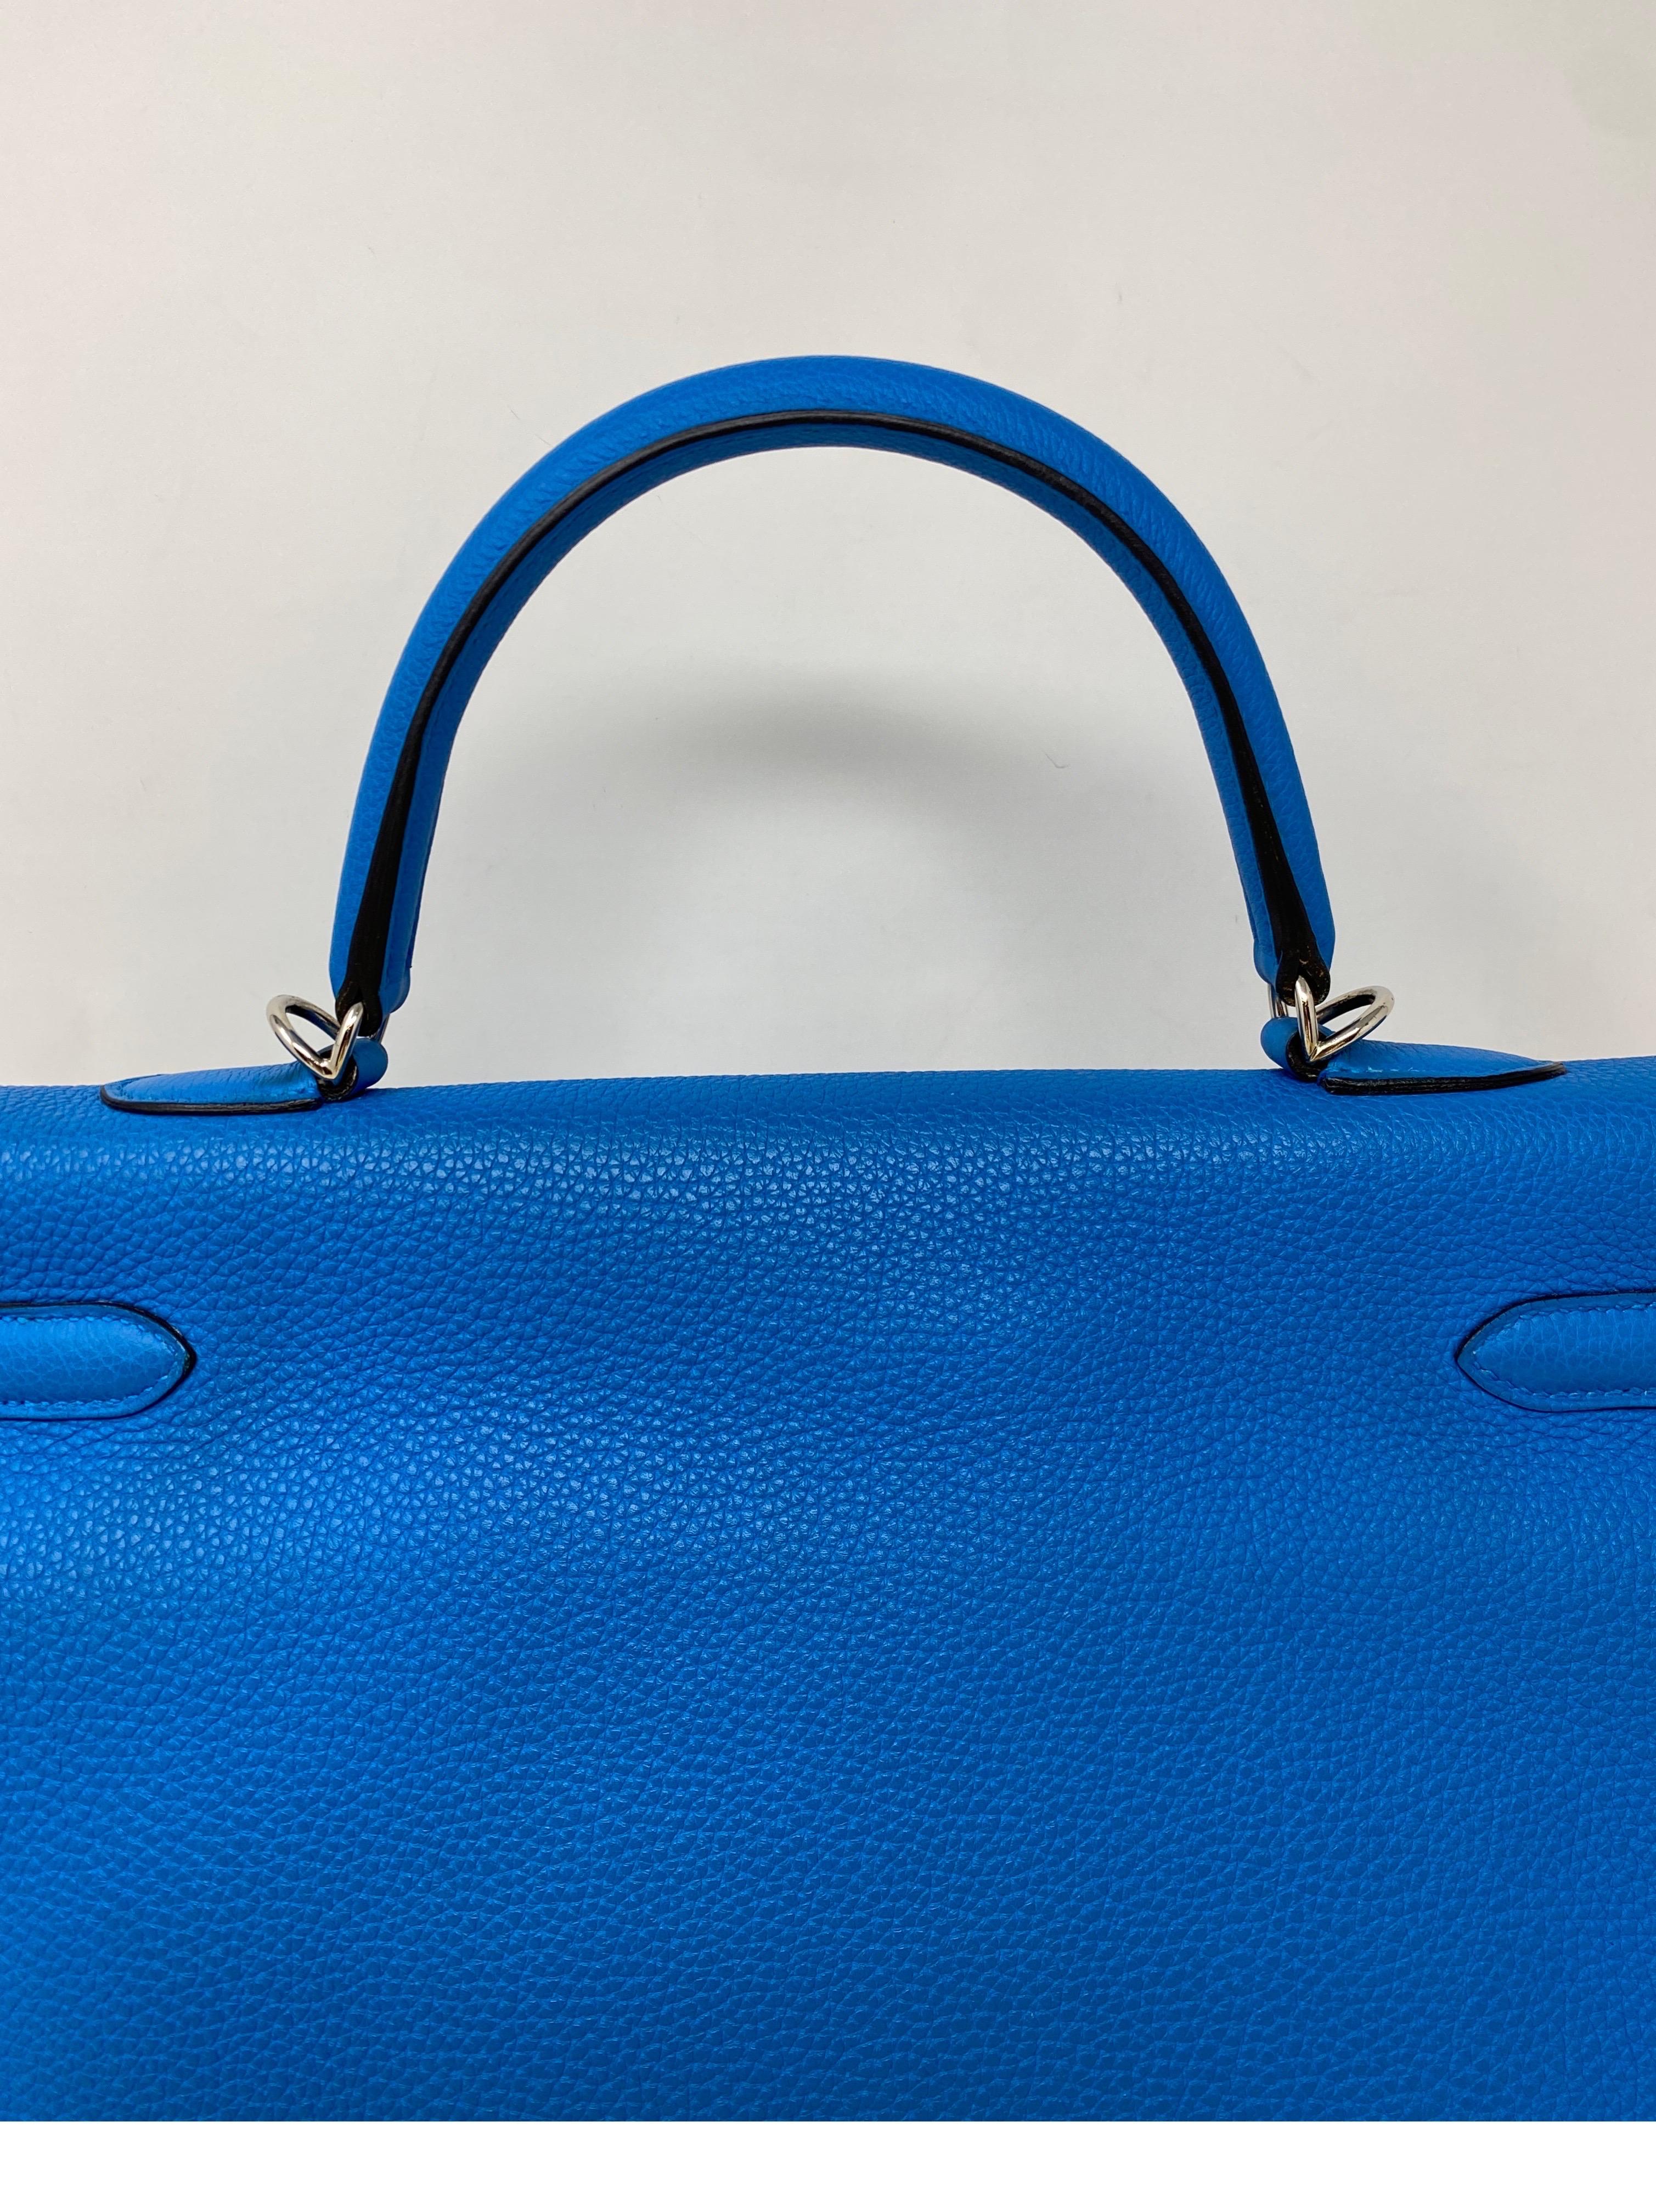 Women's or Men's Hermes Kelly 35 Zanzibar Blue Bag 